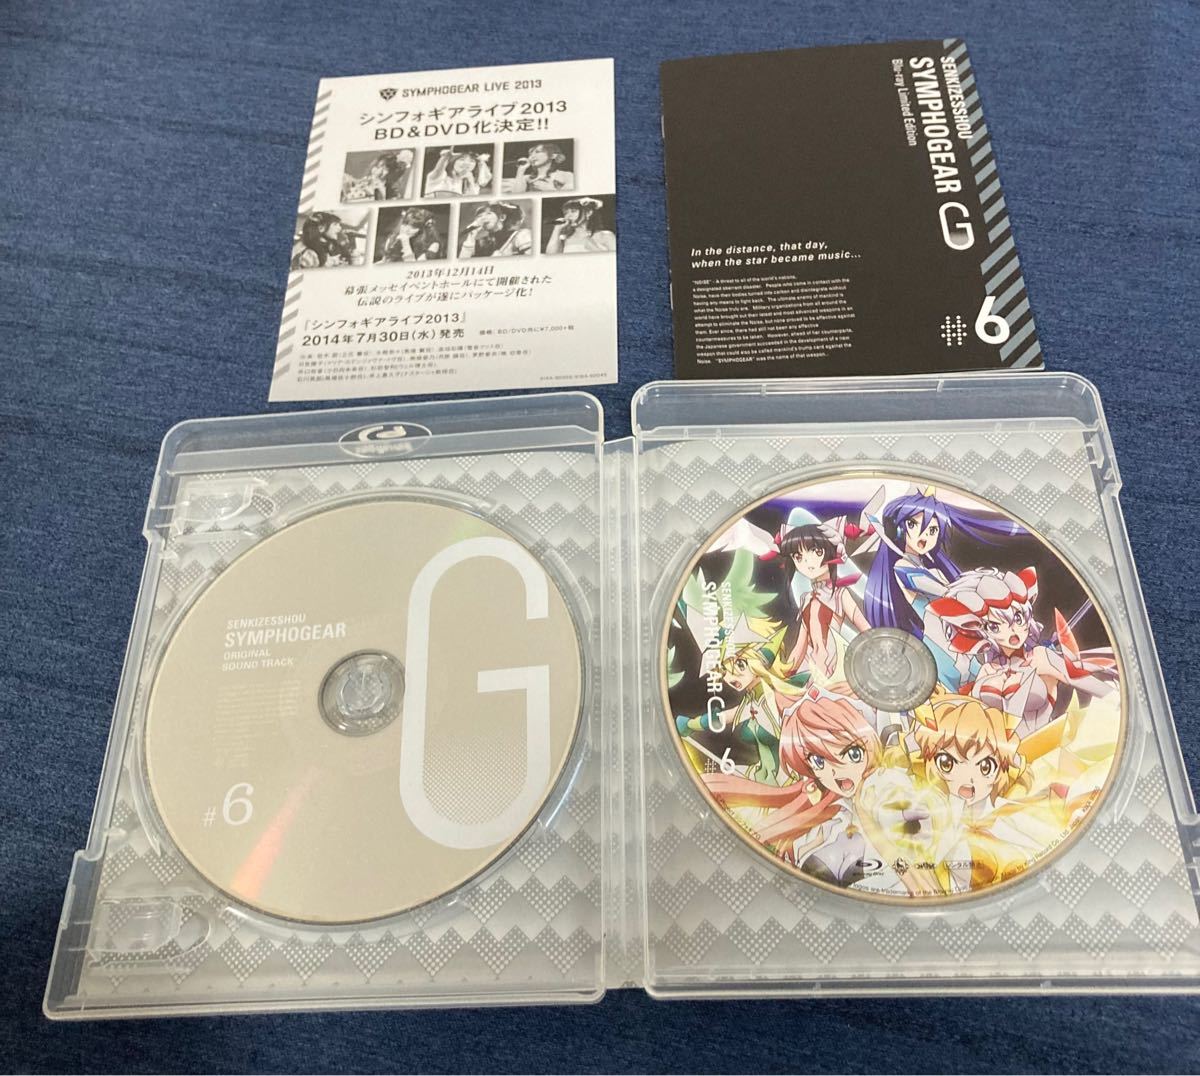 超激レアBlu-ray 戦姫絶唱シンフォギアG期間限定版全6巻セット BOX付き